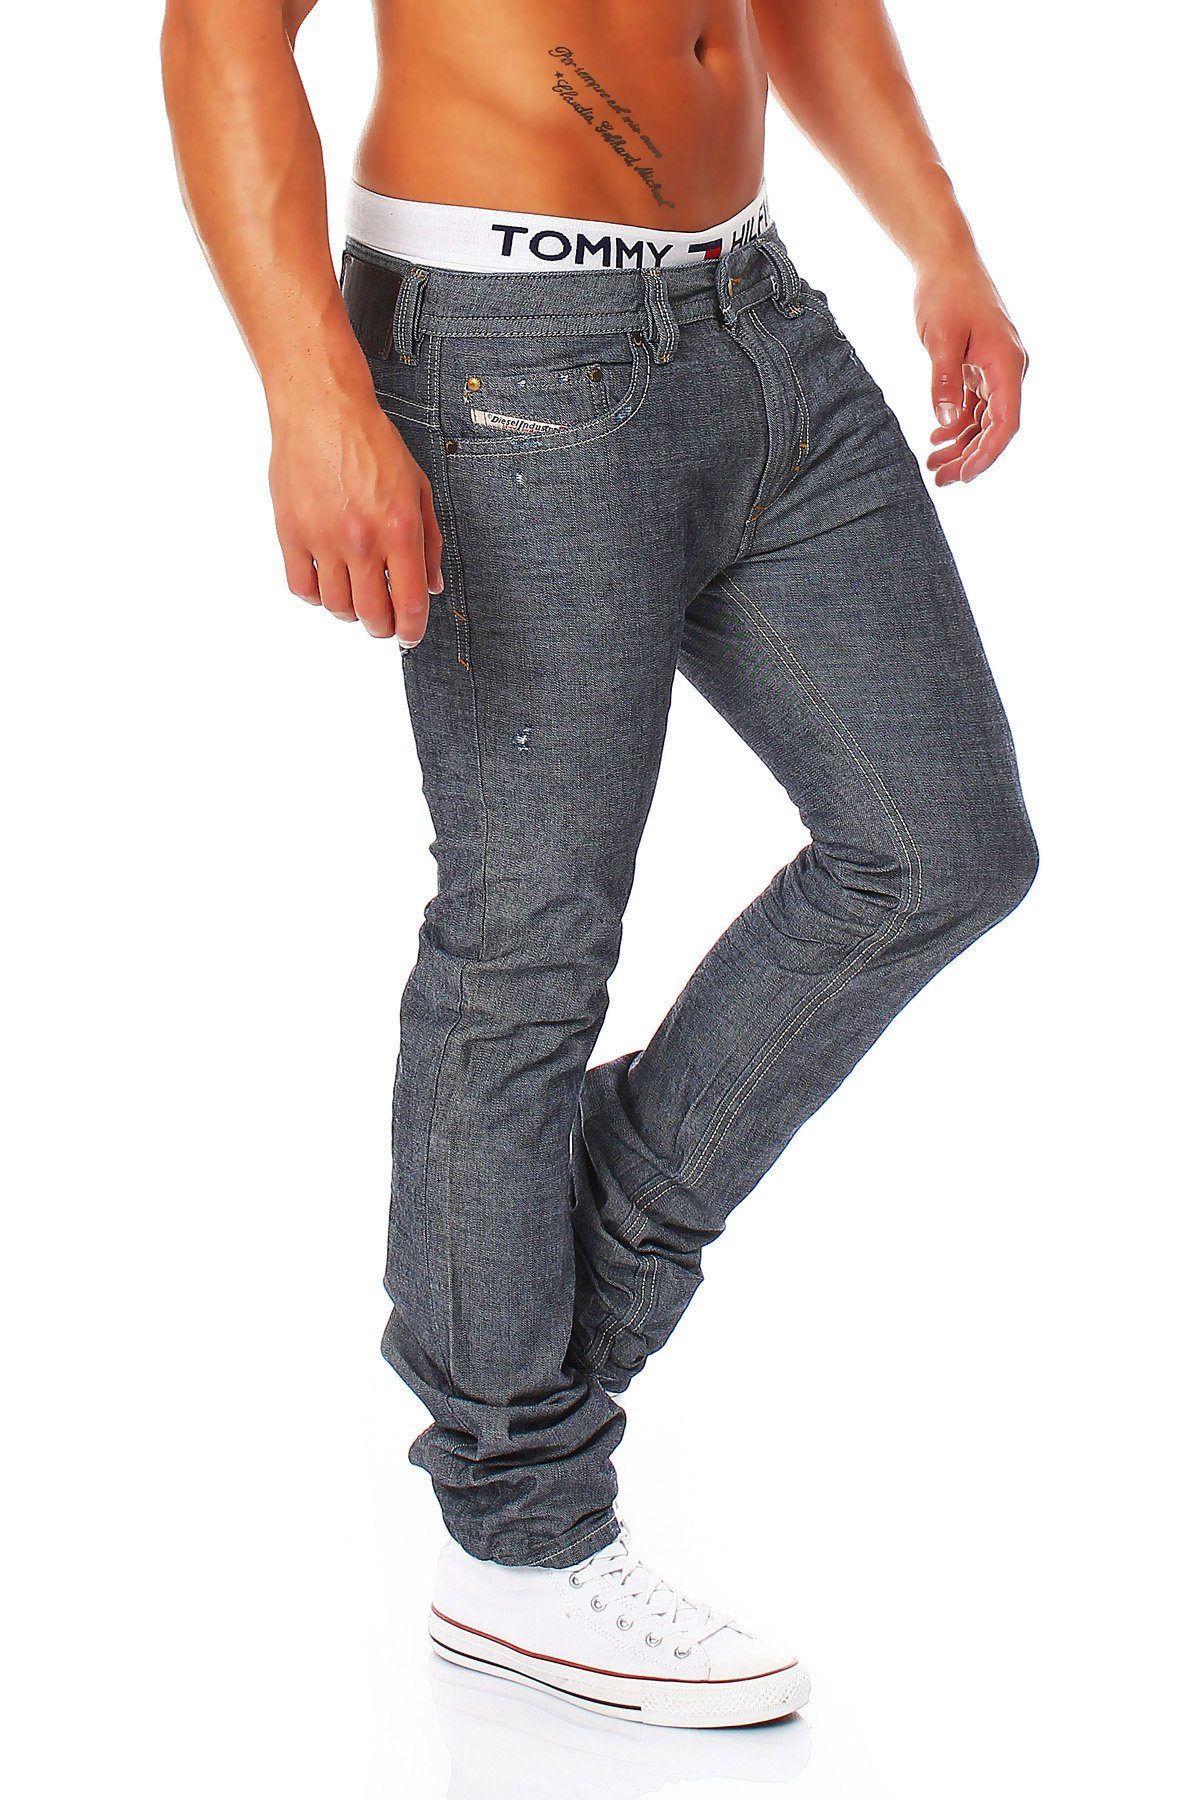 Pocket 5 Herren Röhrenjeans, Used-Look Diesel Style, Slim-fit-Jeans 0809D Thavar Blau-Grau, Dezenter